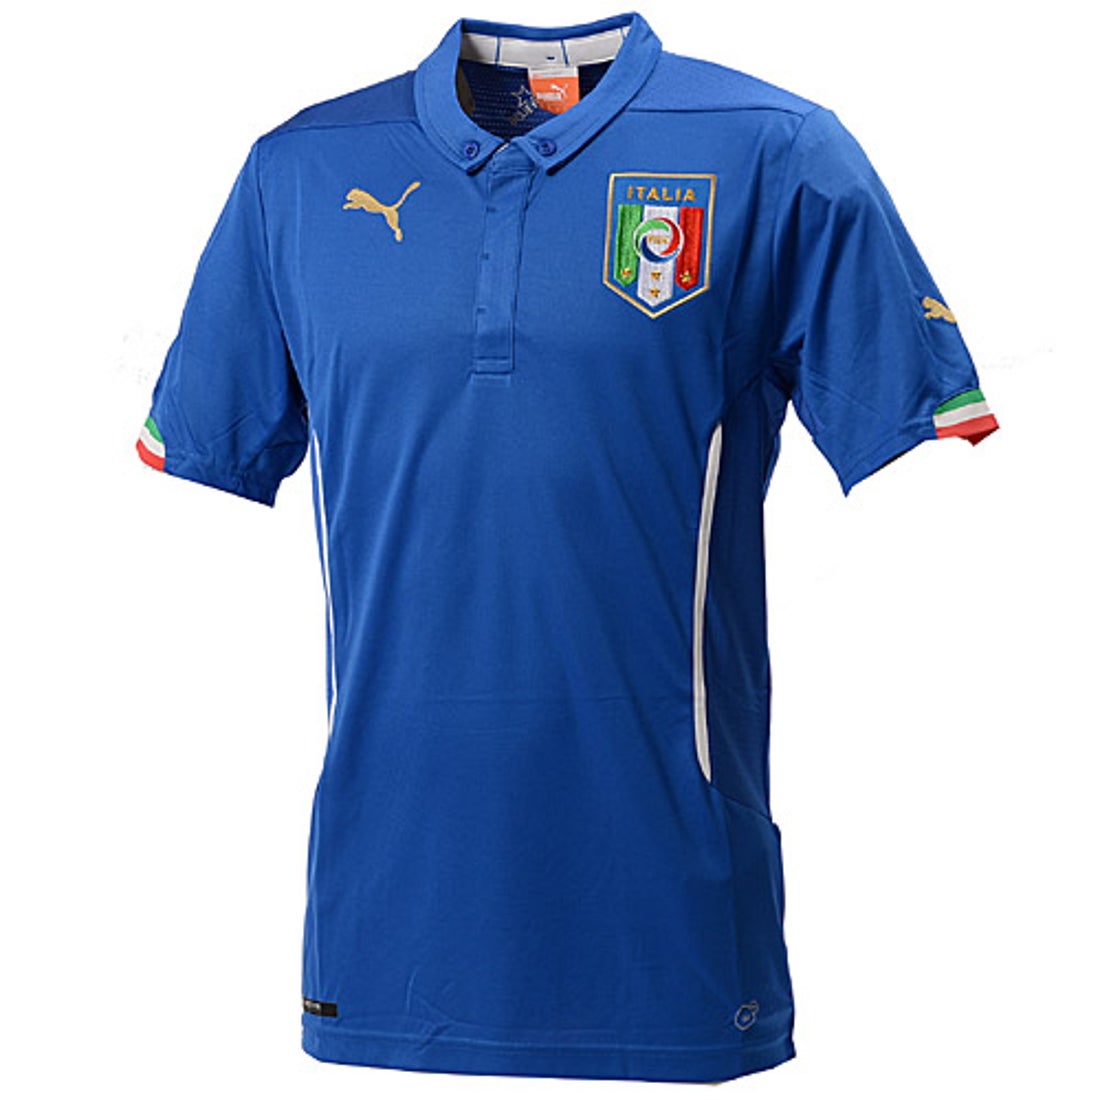 Puma イタリア代表 14 ユニフォーム ホーム 半袖 レプリカ サッカーショップ Sws サッカーユニフォーム サッカー用品通販 フットボールパーク